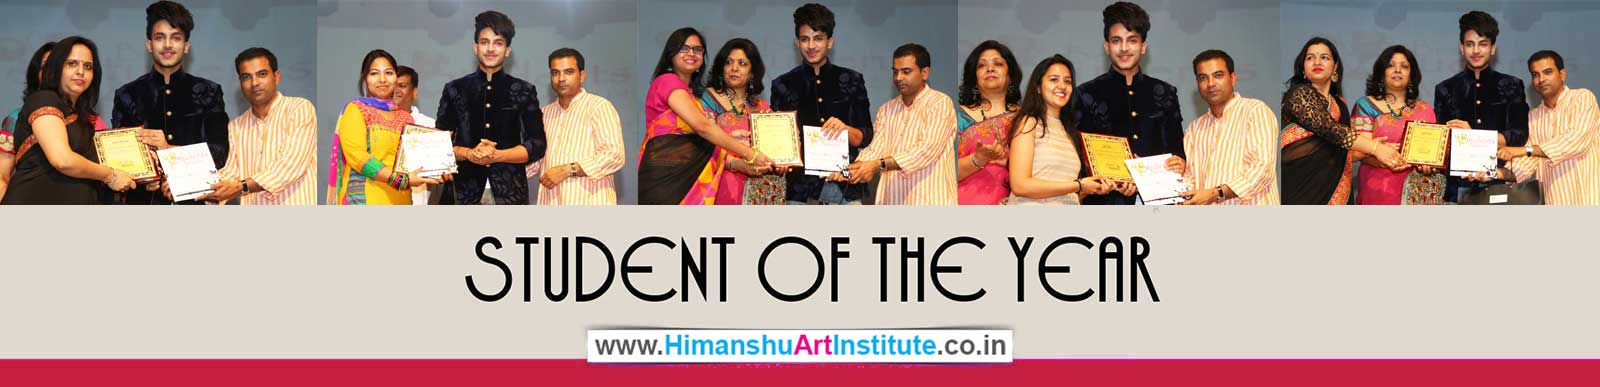 Urvi Jain, Ambika Mahajan, Anuradha Rathore, and Binoo Yadav Awarded Student of the Year 2015